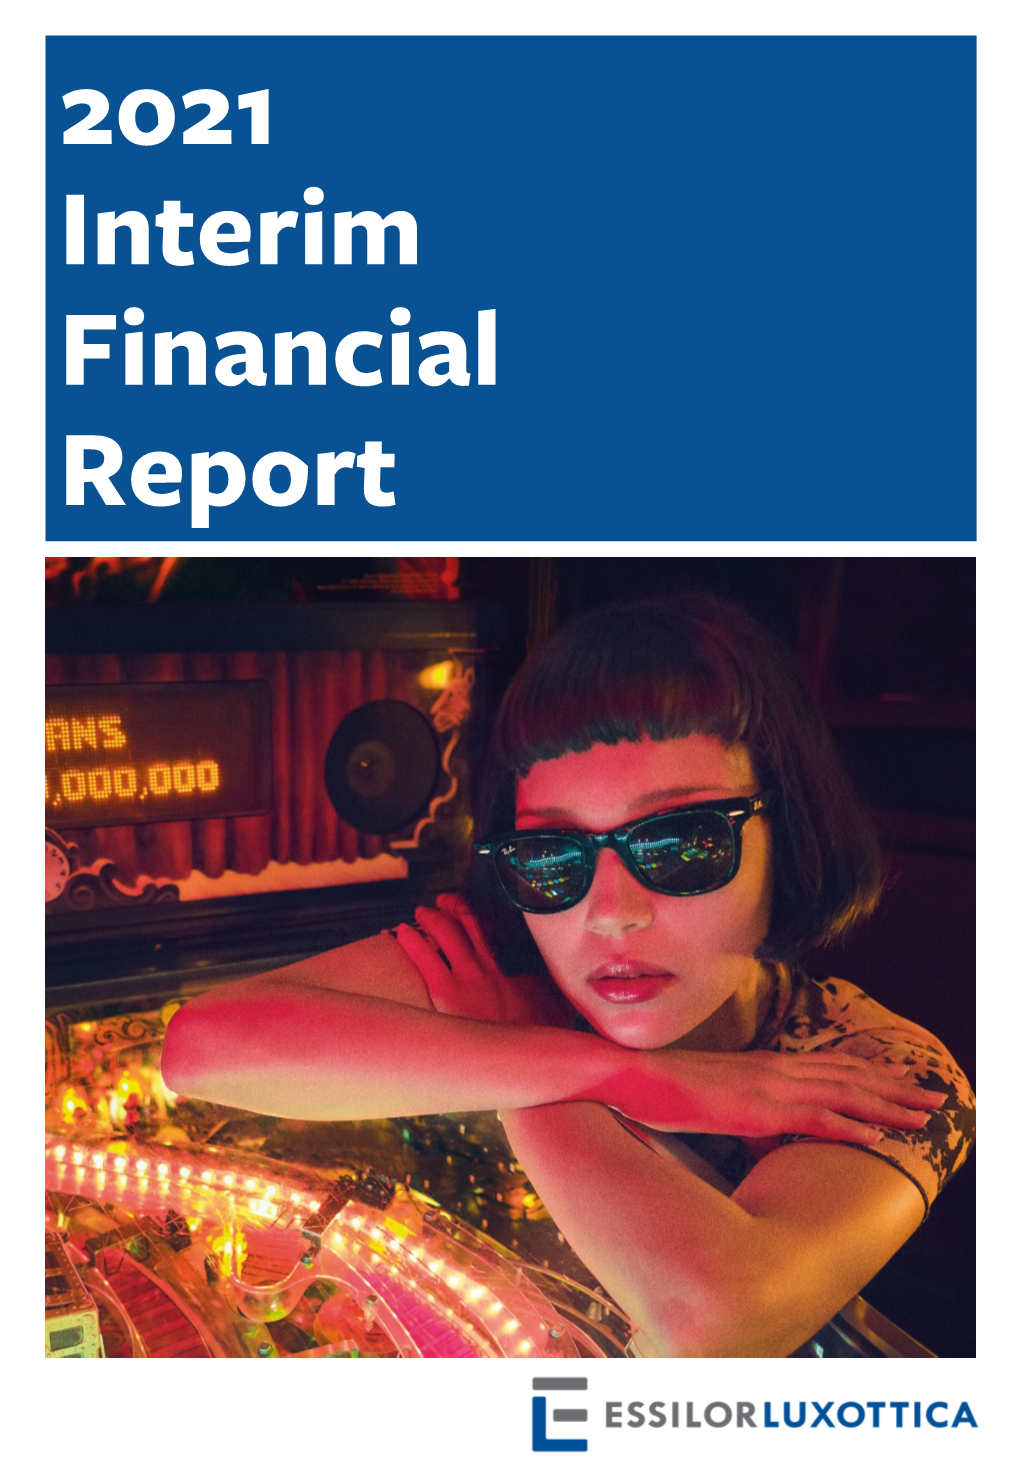 2021 Interim Financial Report 2021 Interim Financial Report Essilorluxottica